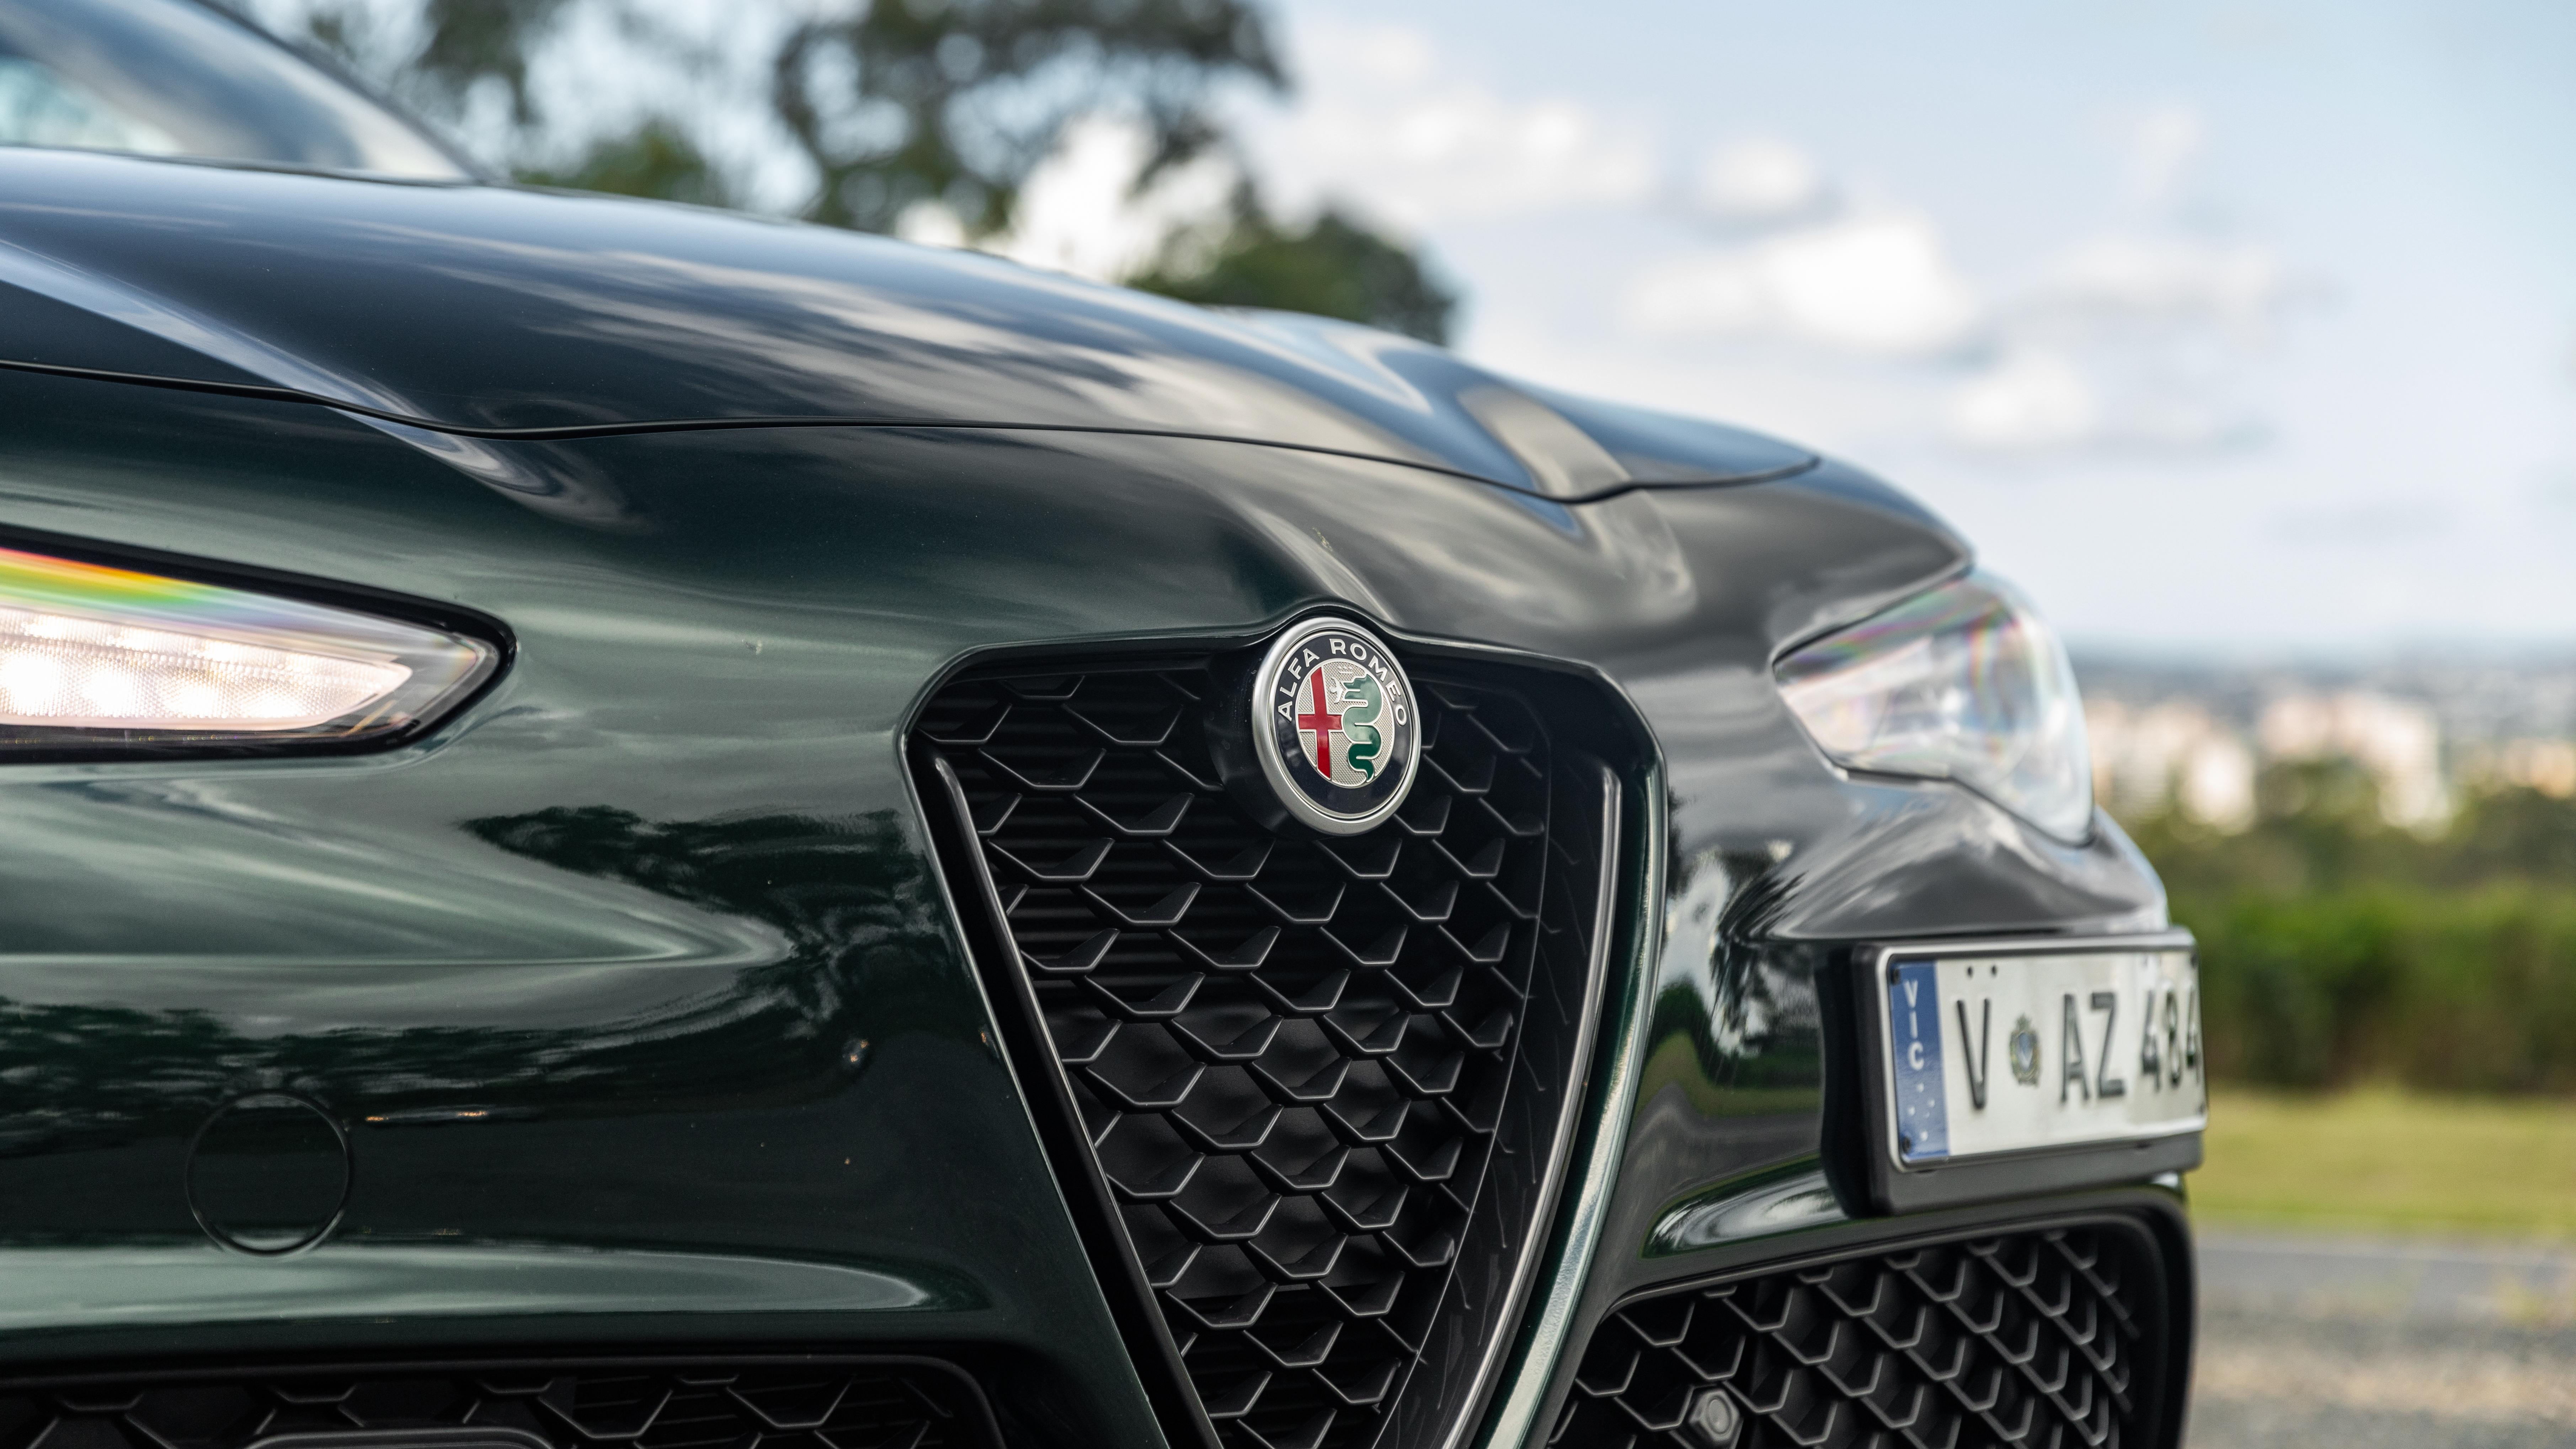 Alfa Romeo Giulietta will be axed in 2020